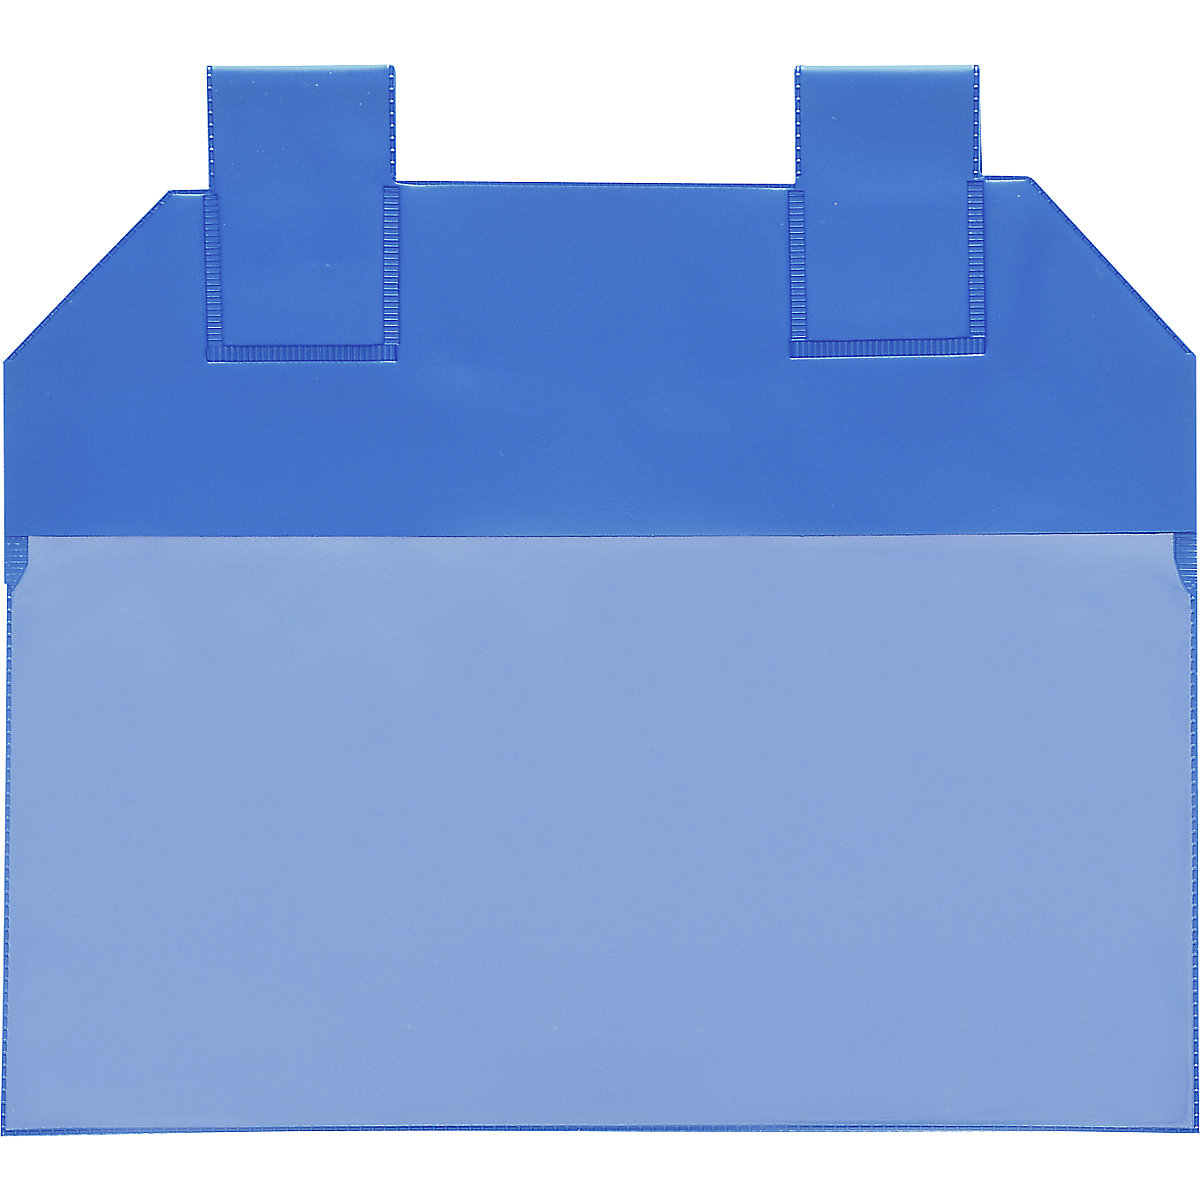 Gitterboxtaschen, VE 50 Stk, für Papierformat DIN A6, blau-3